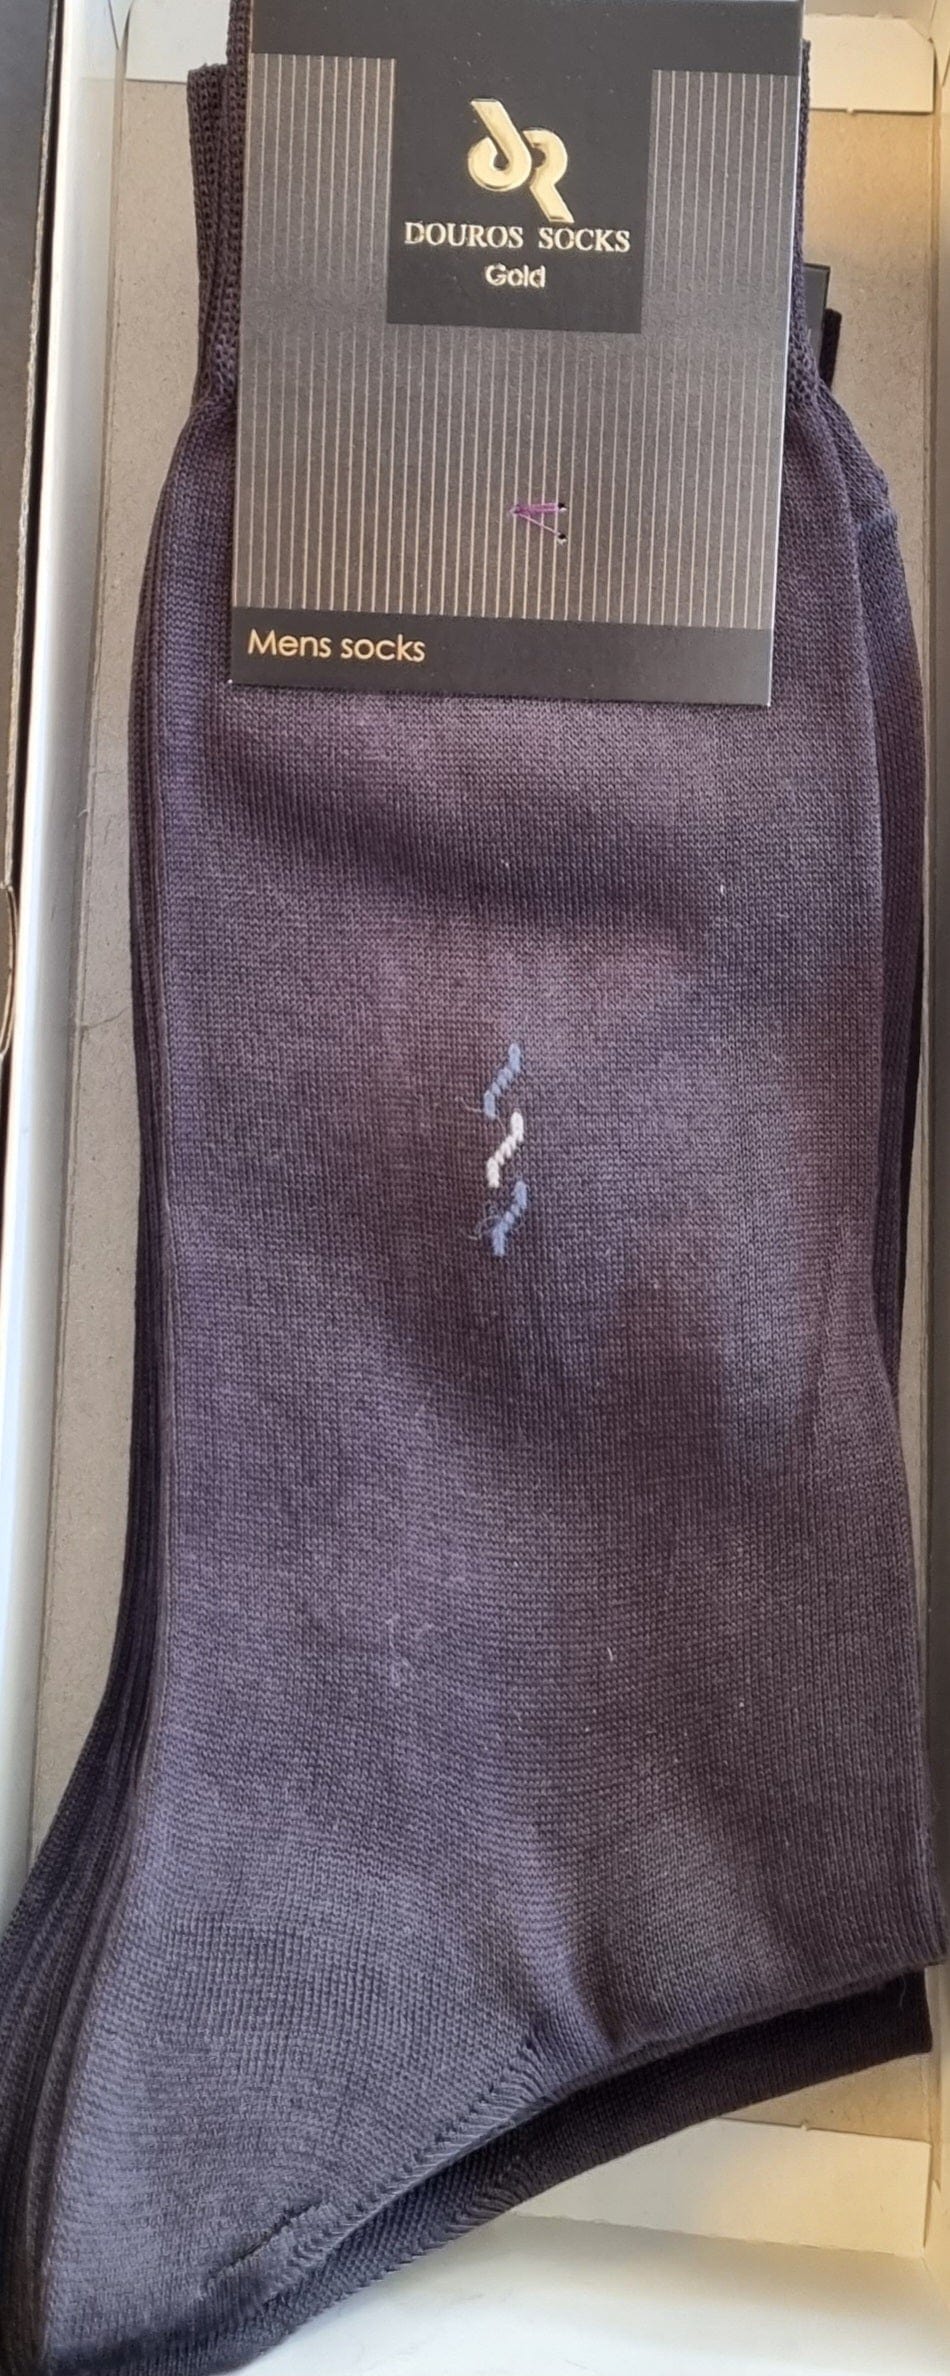 Ανδρική Βαμβακερή Μερσεριζέ Κάλτσα Ανθρακί Douros 545 | evaunderwear